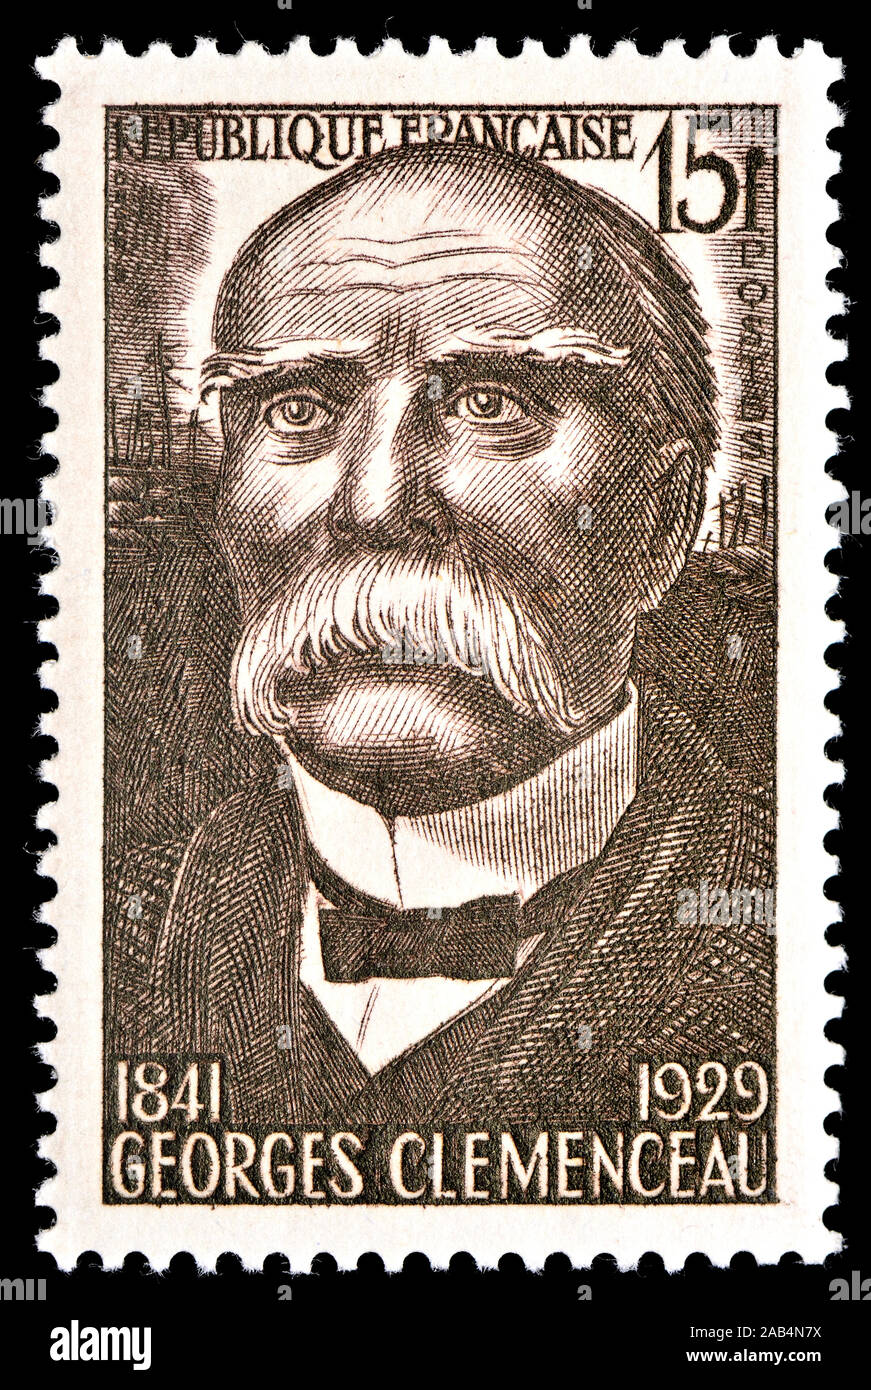 Französische Briefmarke (1951): Georges Eugène Benjamin Clemenceau (1841-1929), französischer Staatsmann und Premierminister von Frankreich während des Ersten Weltkrieges Stockfoto